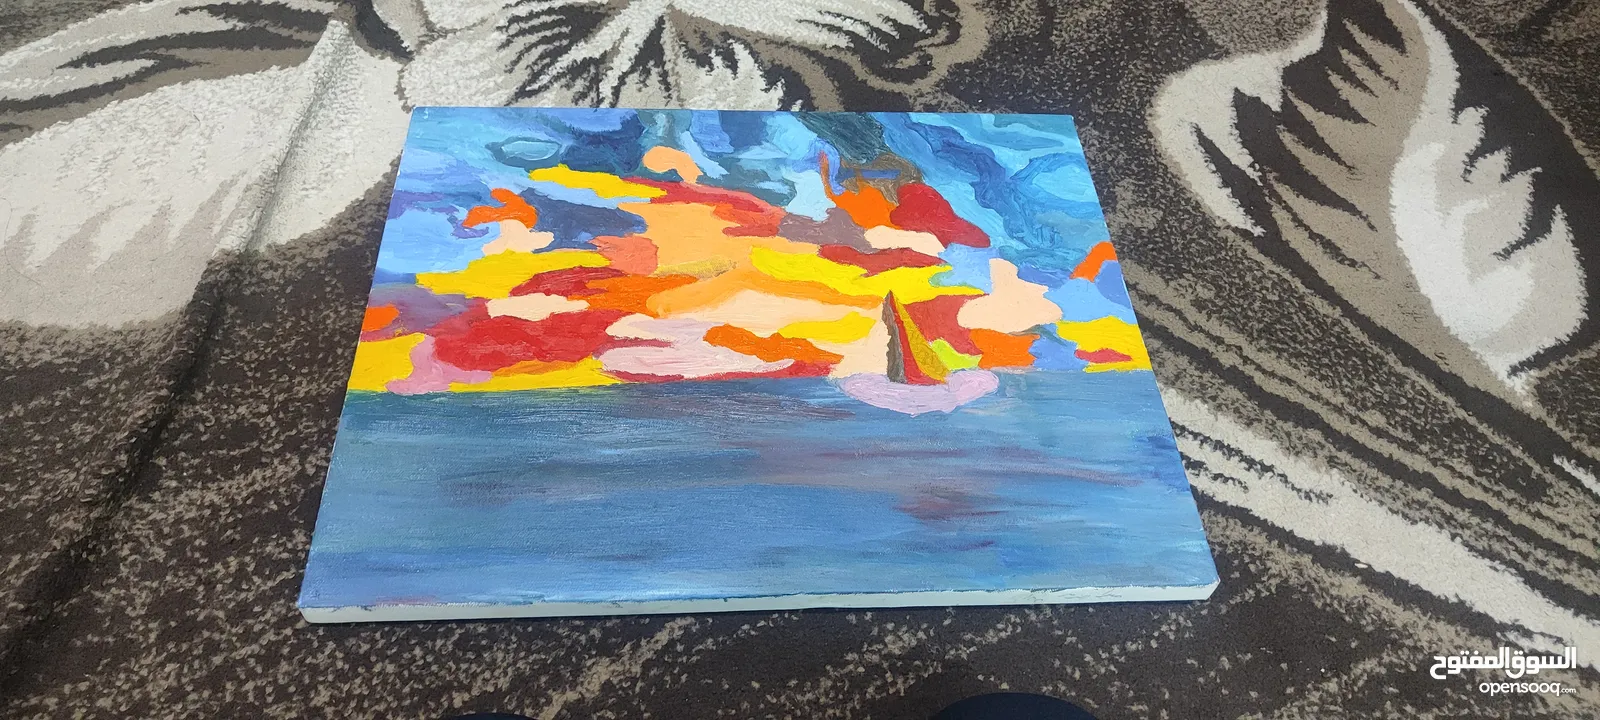 لوحة الإبحار بالأعماق بألوان جذابه للبيع